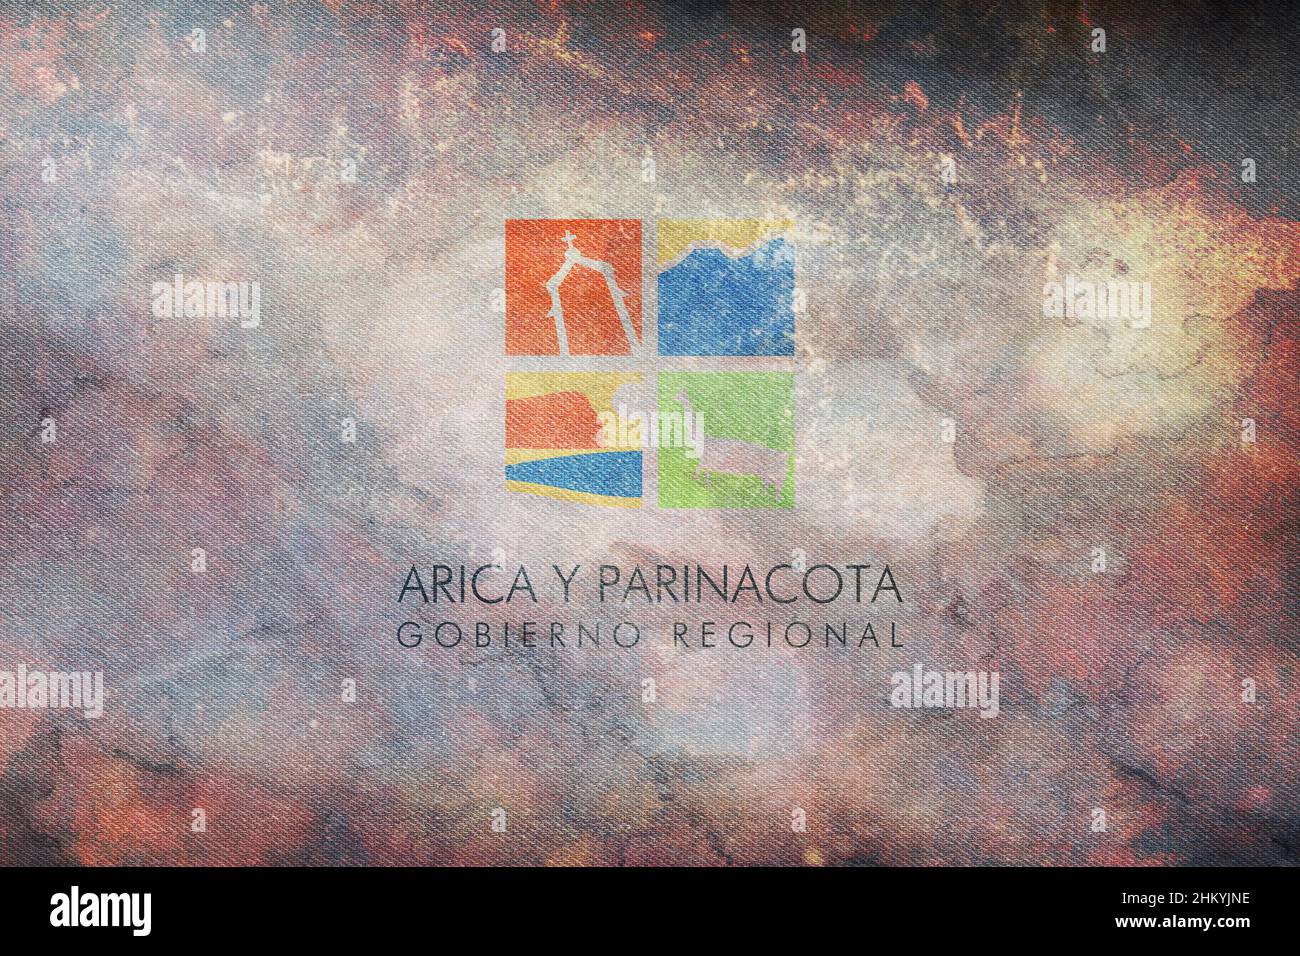 Vue de dessus du drapeau Arica y Parinacota, Chili. Drapeau rétro avec texture grunge.Voyage chilien et patriote concept. Pas de mât.Conception de plan, présentation.FLA Banque D'Images